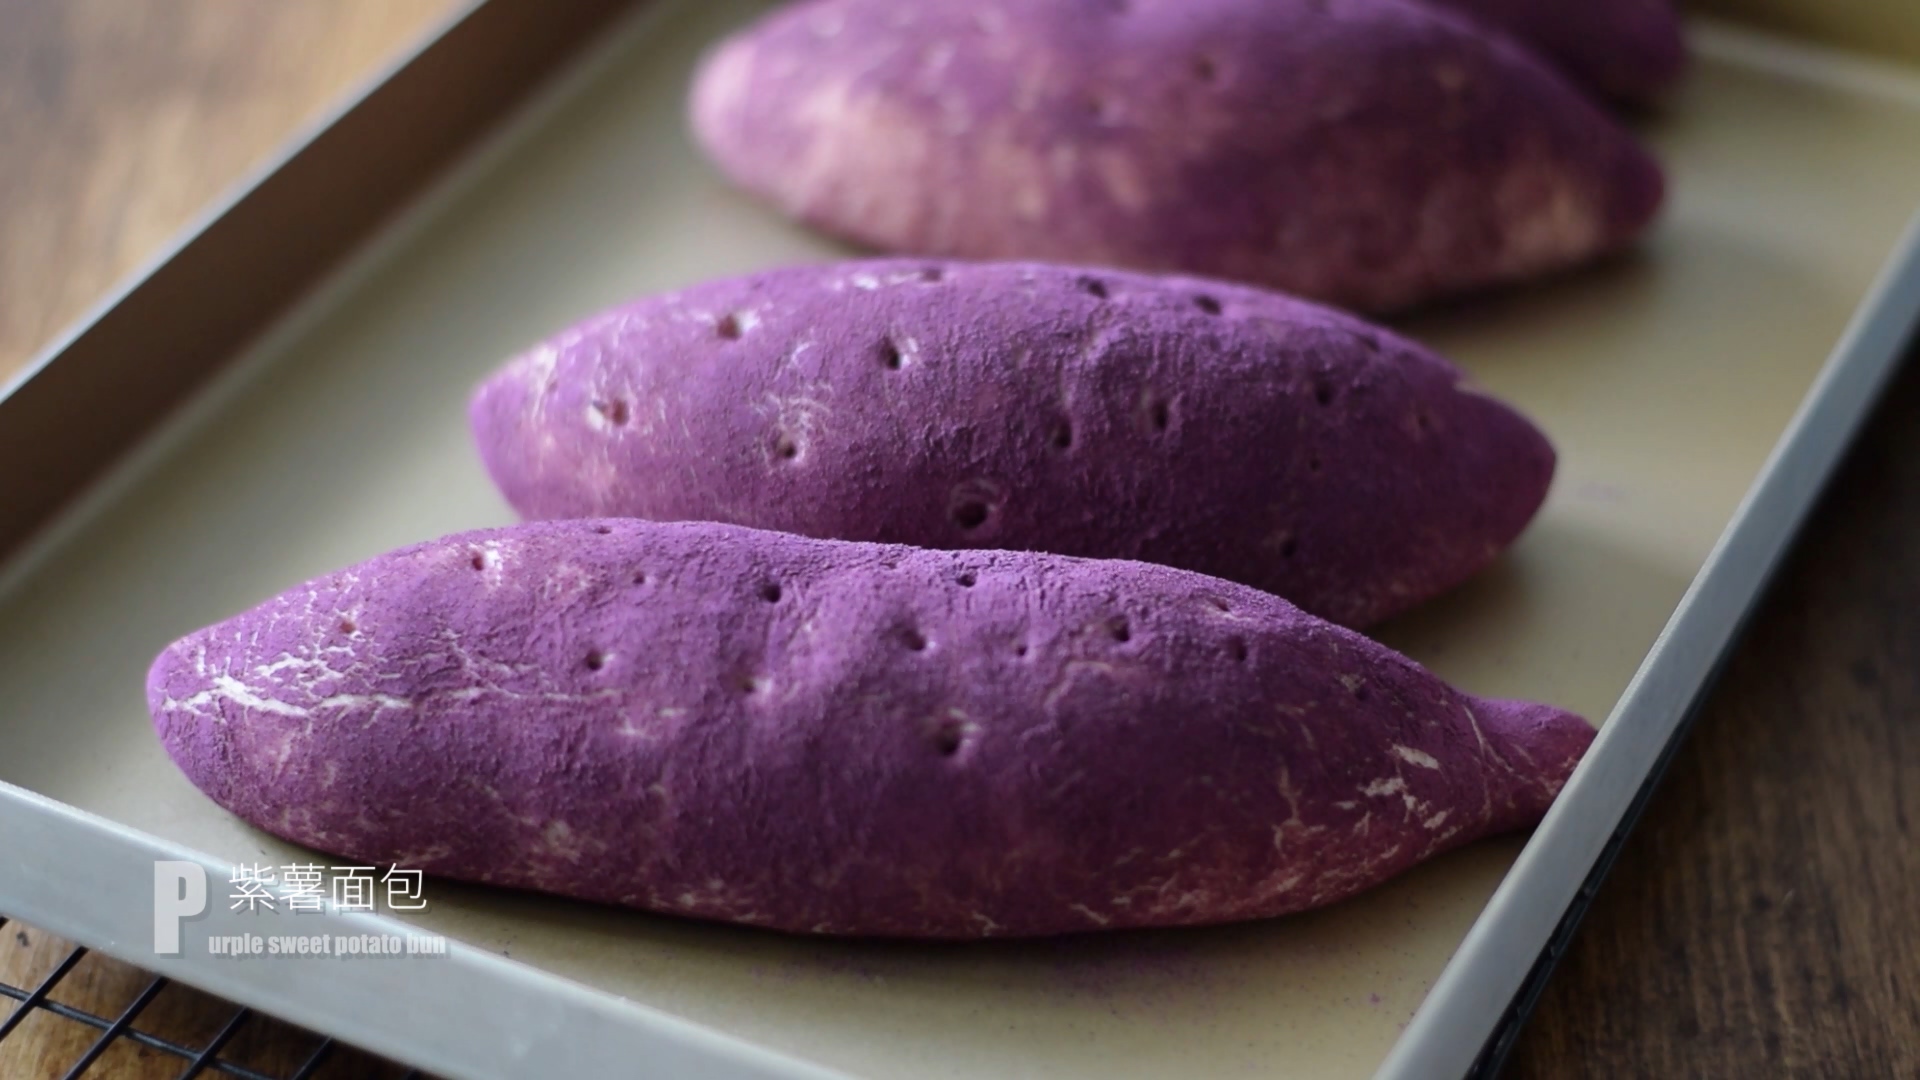 紫薯面包 _汤种、超柔软、仿真 Purple Sweet Potato Buns looks li.mp4_20201229_1928.jpg